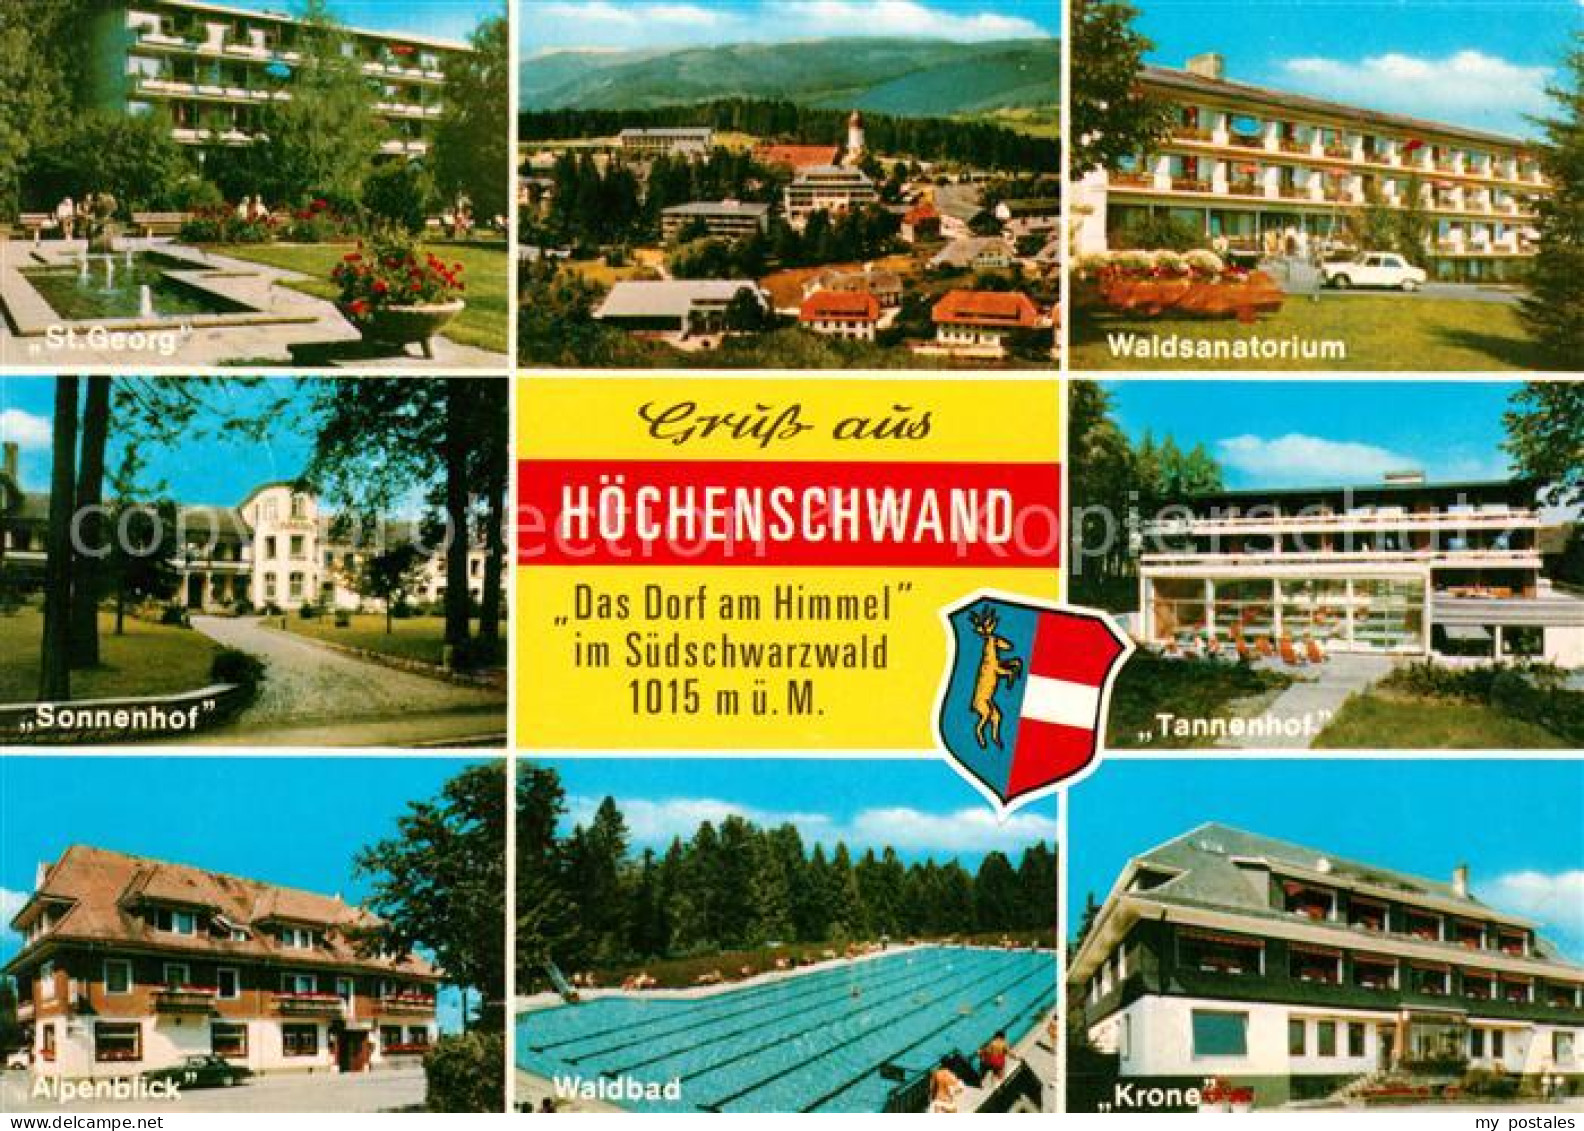 73125751 Hoechenschwand St. Georg Waldsanatorium Tannenhof Krone Waldbad Alpenbl - Höchenschwand